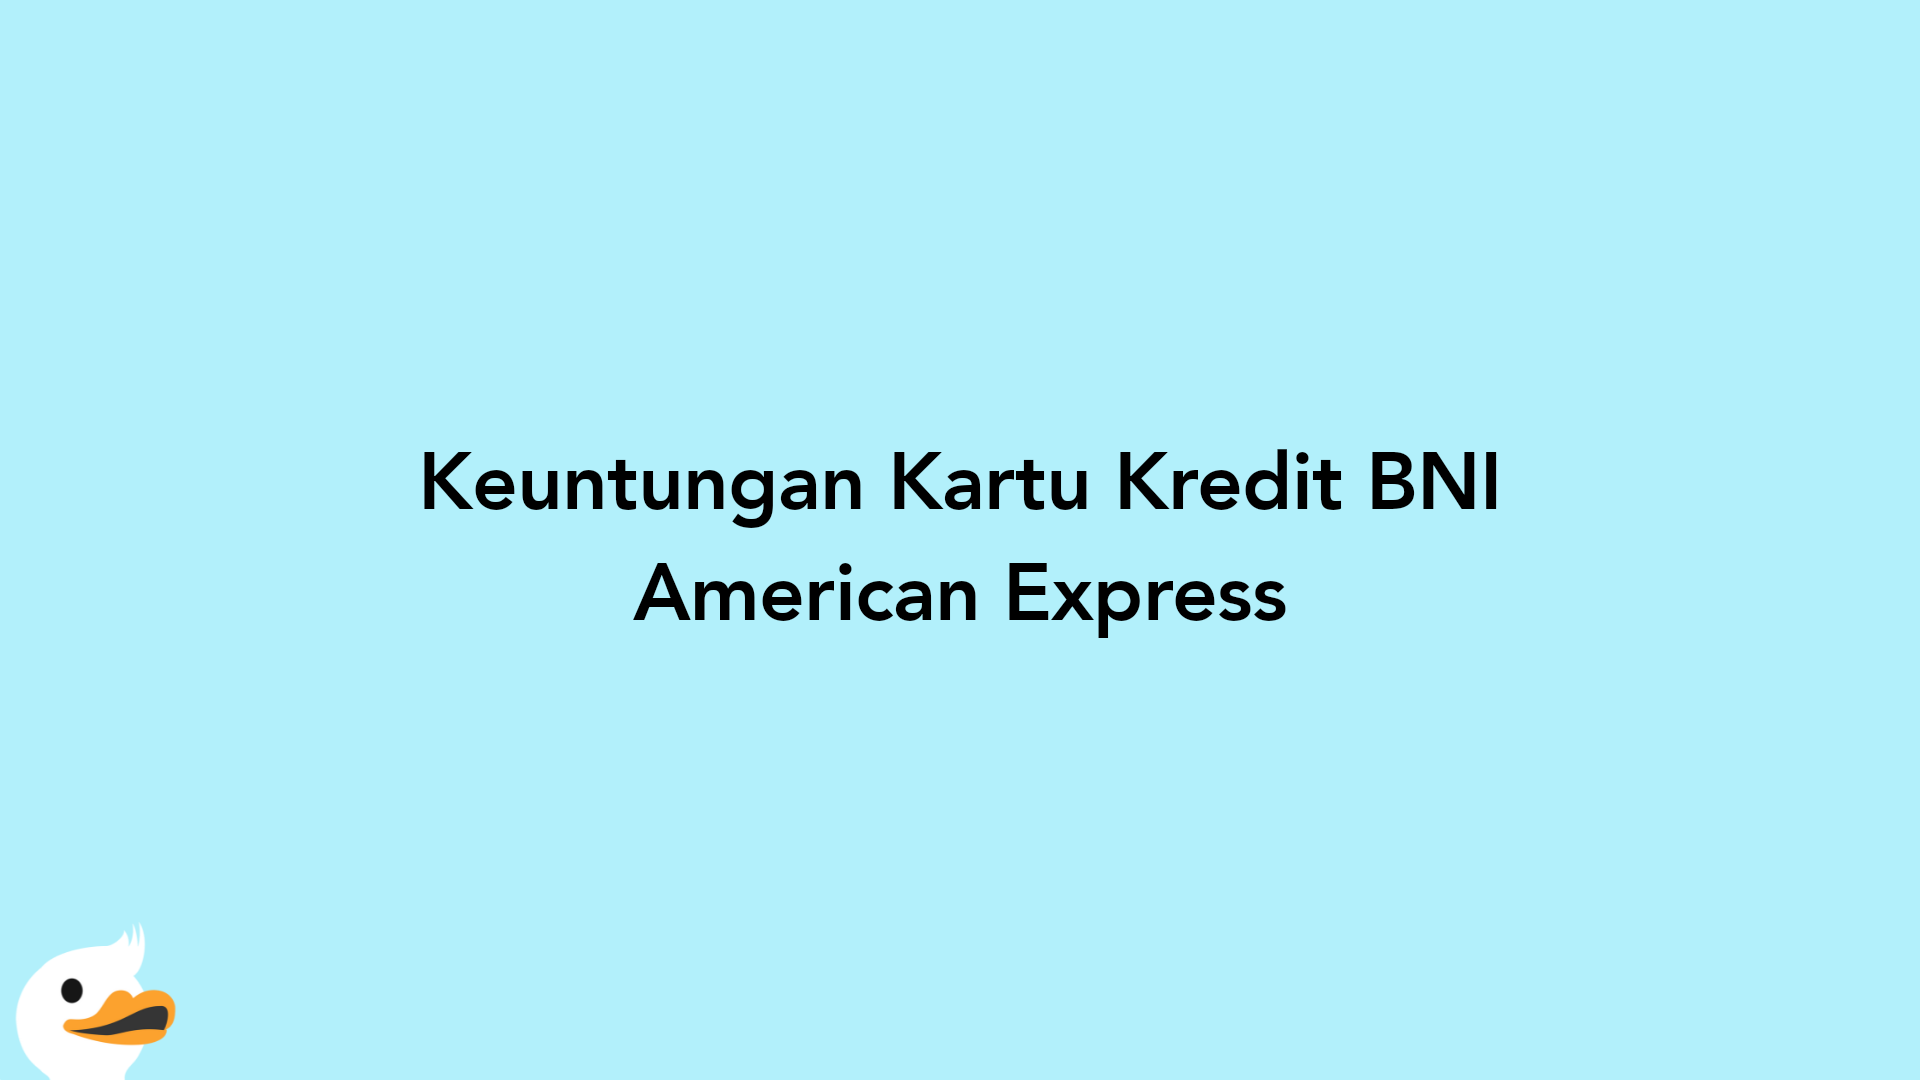 Keuntungan Kartu Kredit BNI American Express